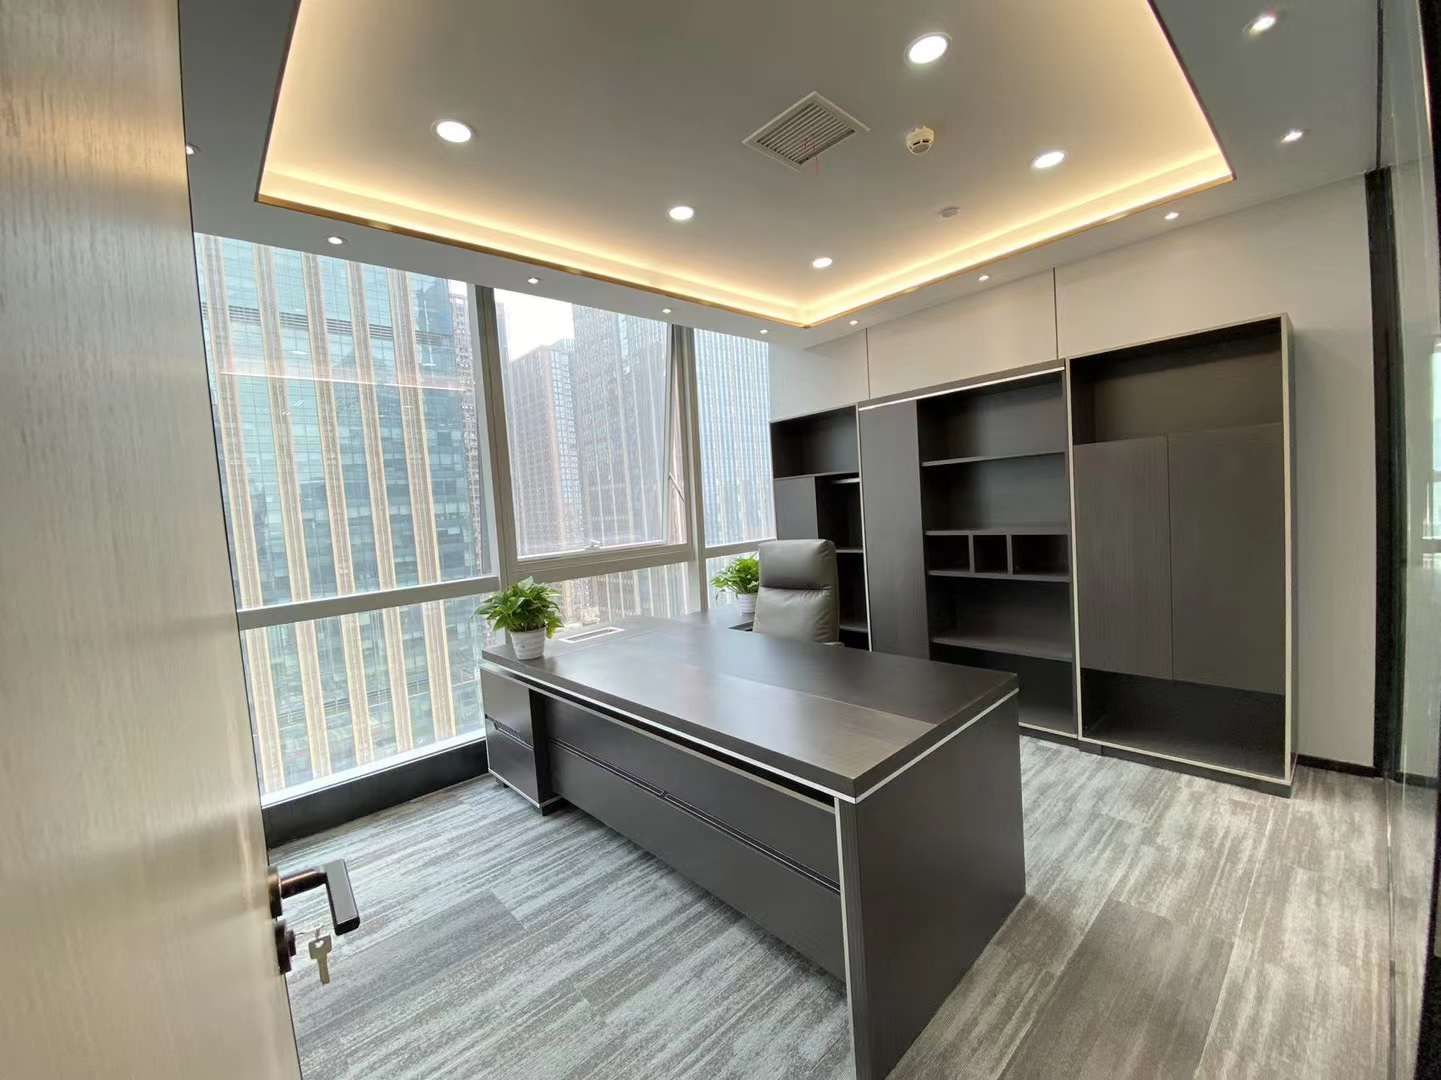 天府二街甲级楼盘 382平方 6隔间28+工位 全新装修 精装带家具 天府金融大厦